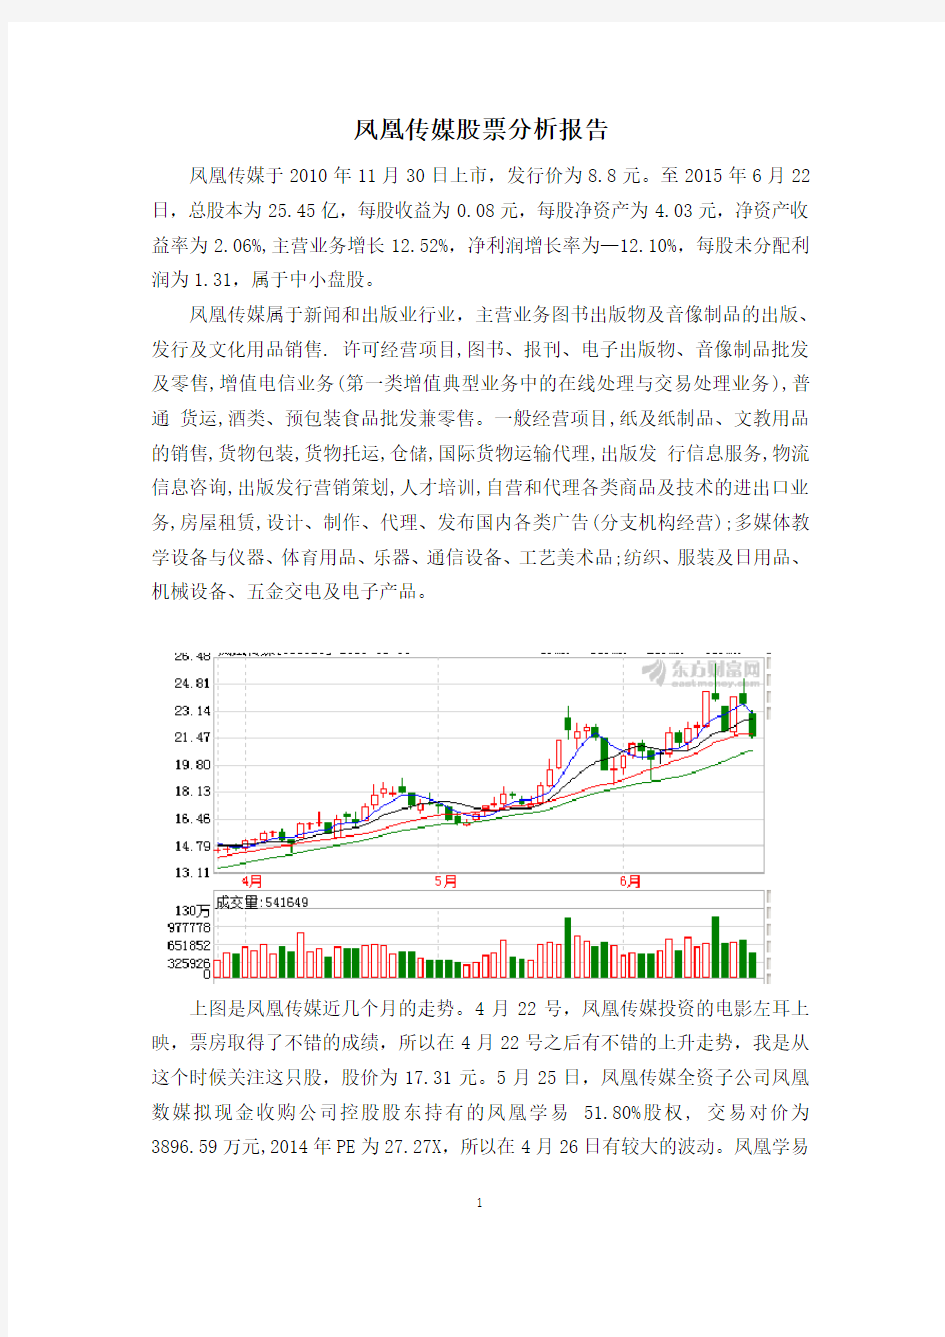 凤凰传媒股票分析报告